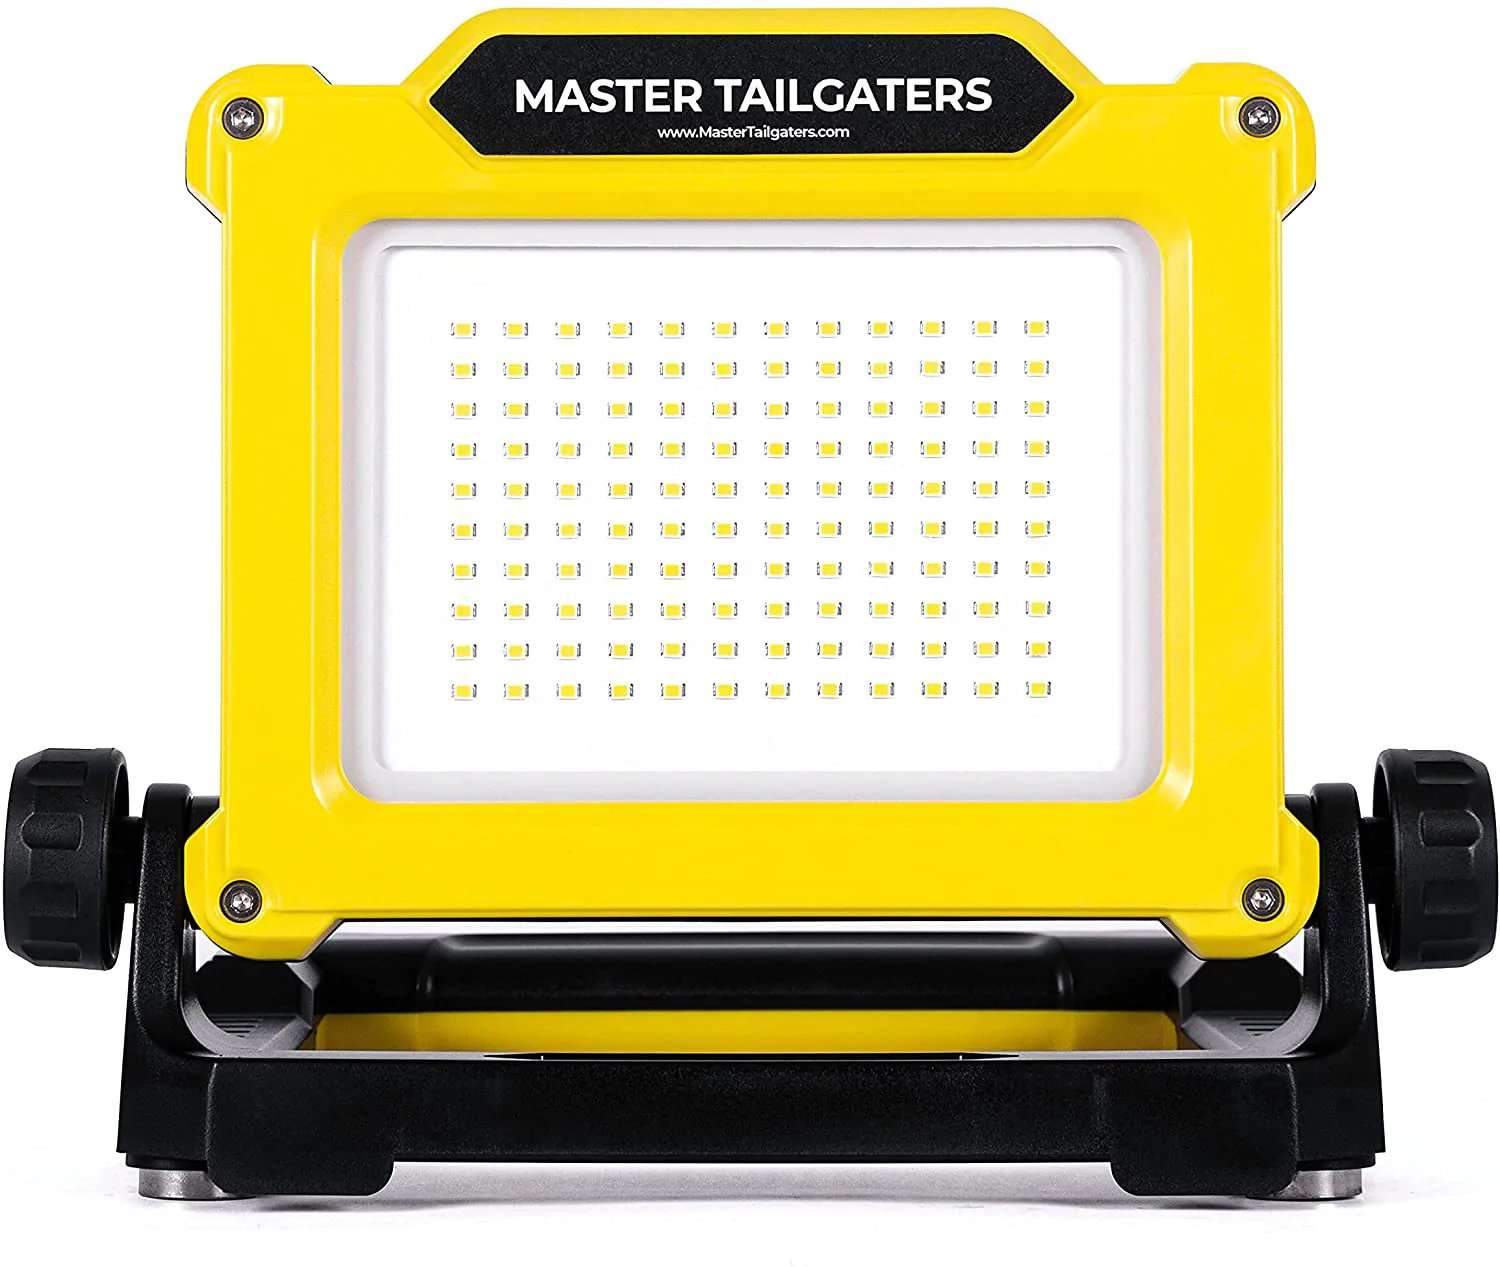 Bevæger sig ikke Partina City Intervenere Master Tailgaters LED Work Flood Light Compatible with DeWalt 20v Battery  (1500, 2000, 3500 Lumens) | Wayfair